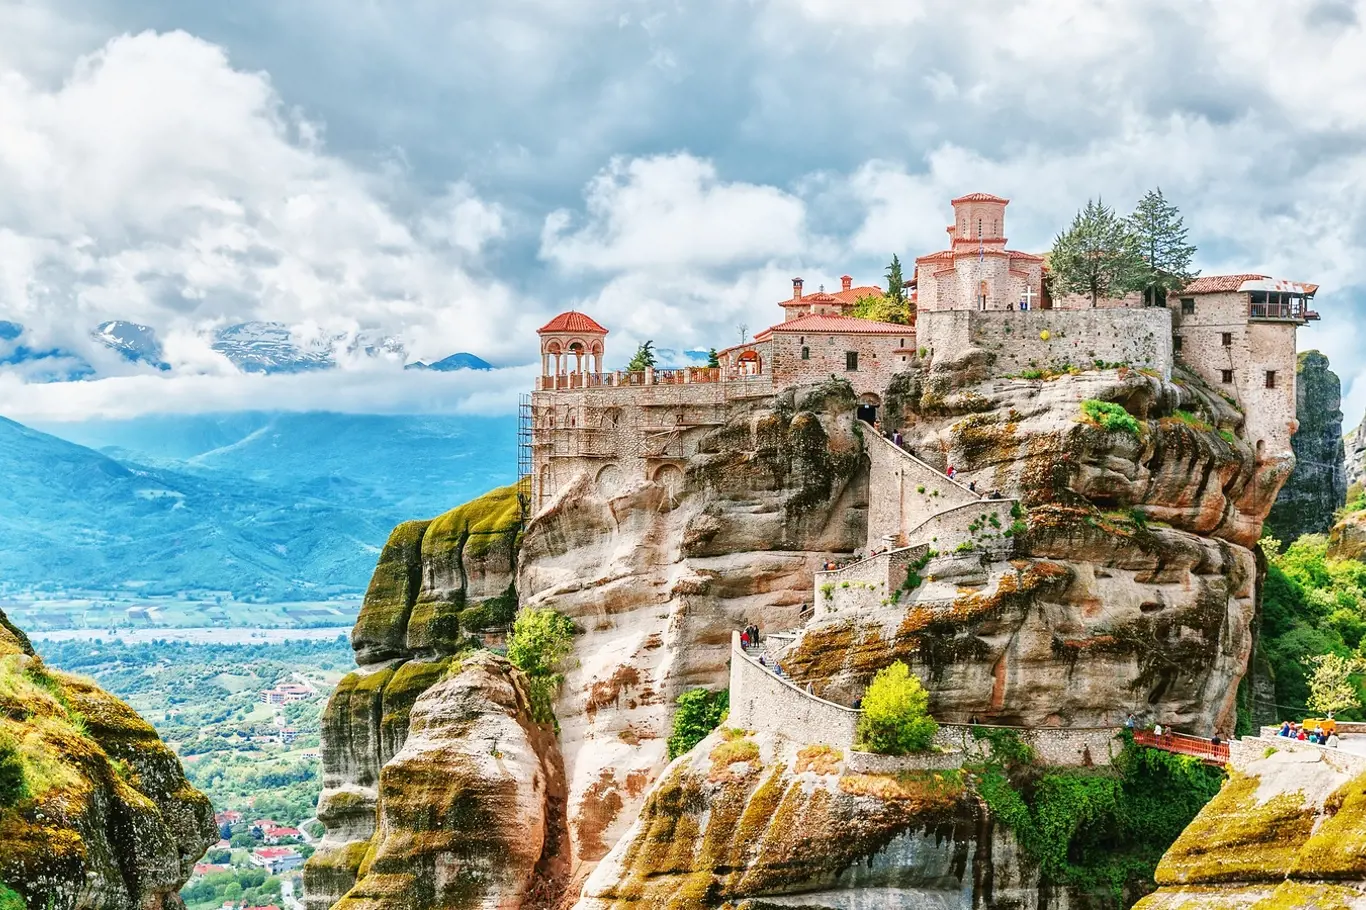 Monastýry na vrcholcích slepencových skal se těší velkému obdivu u turistů z celého světa